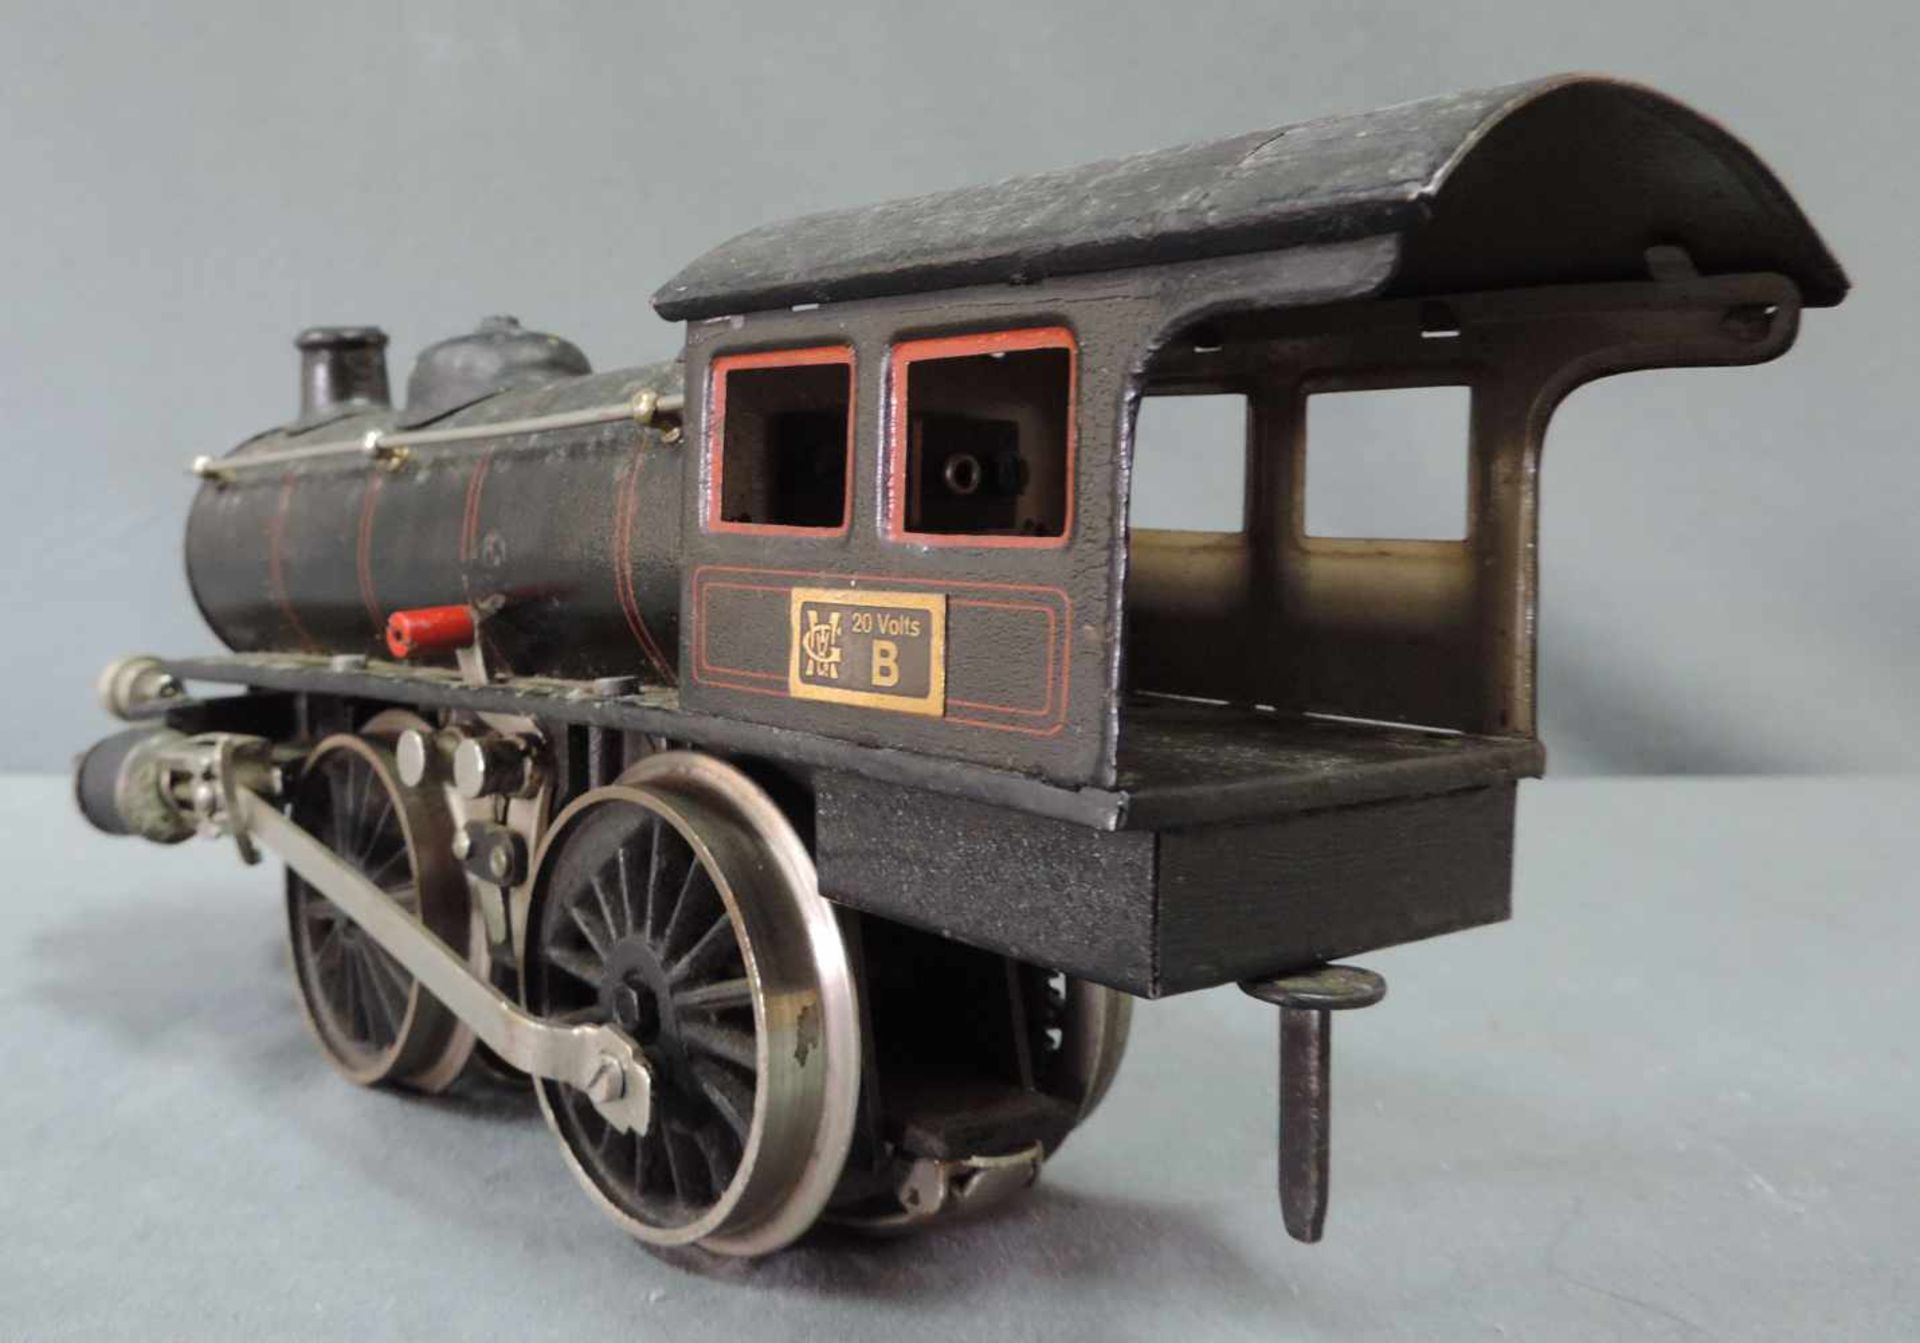 Modell Lokomotive. Märklin. "R 13041" Spur 1 27 cm x 10 cm. Modell Dampflock "R 13041" von Märklin - Bild 6 aus 8